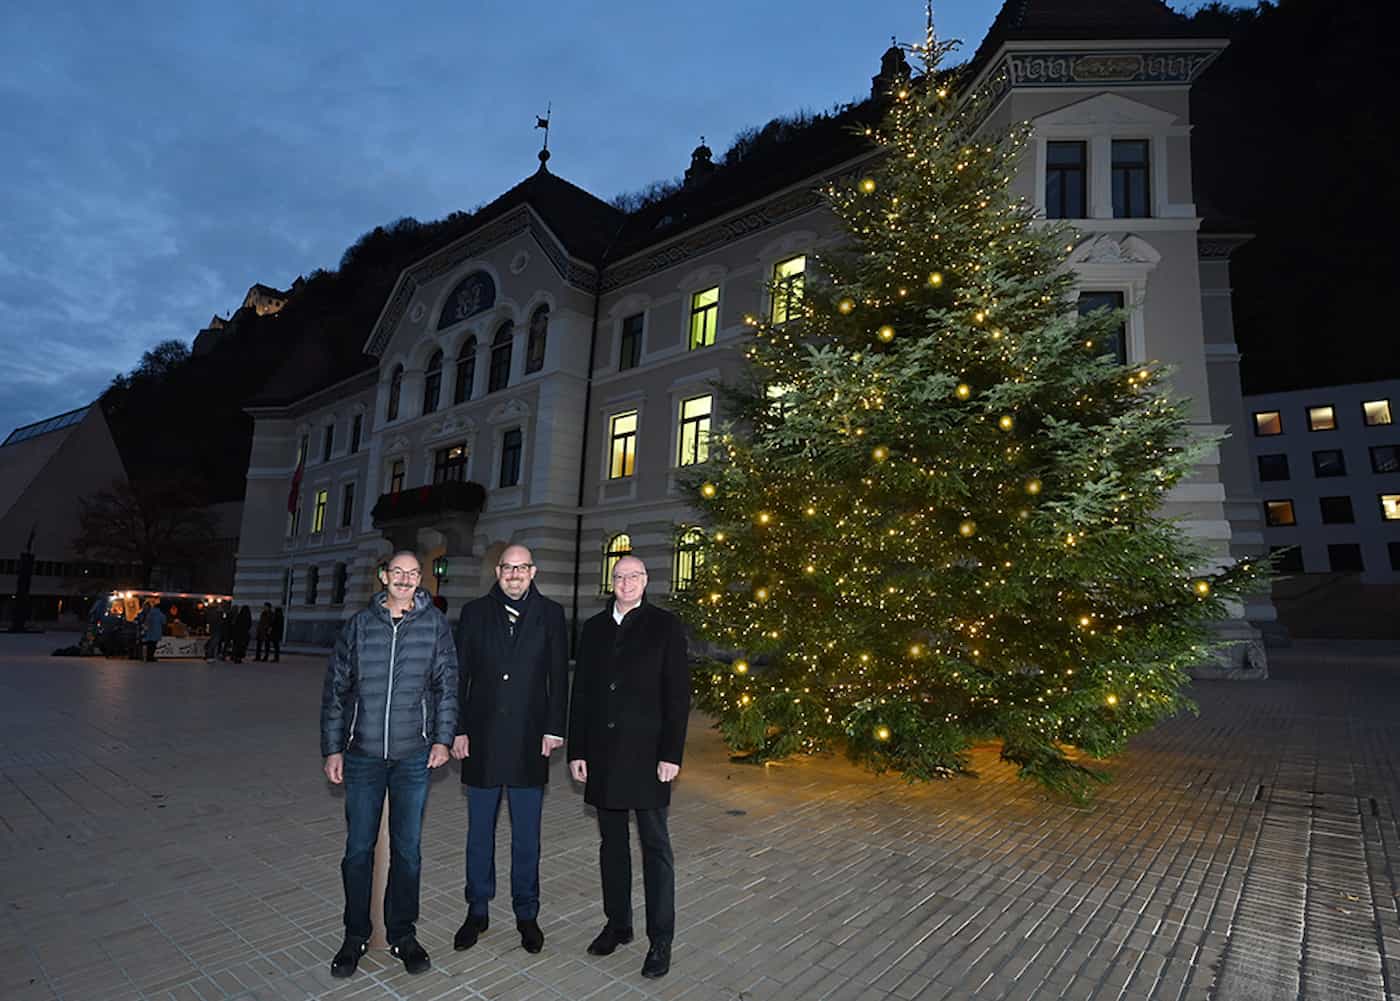 Walter Gantner Gemeinde Planken, Regierungschef Daniel Risch und Rainer Beck, Vorsteher der Gemeinde Planken bei der Übergabe des Weihnachtsbaums vor dem Regierungsgebäude. 